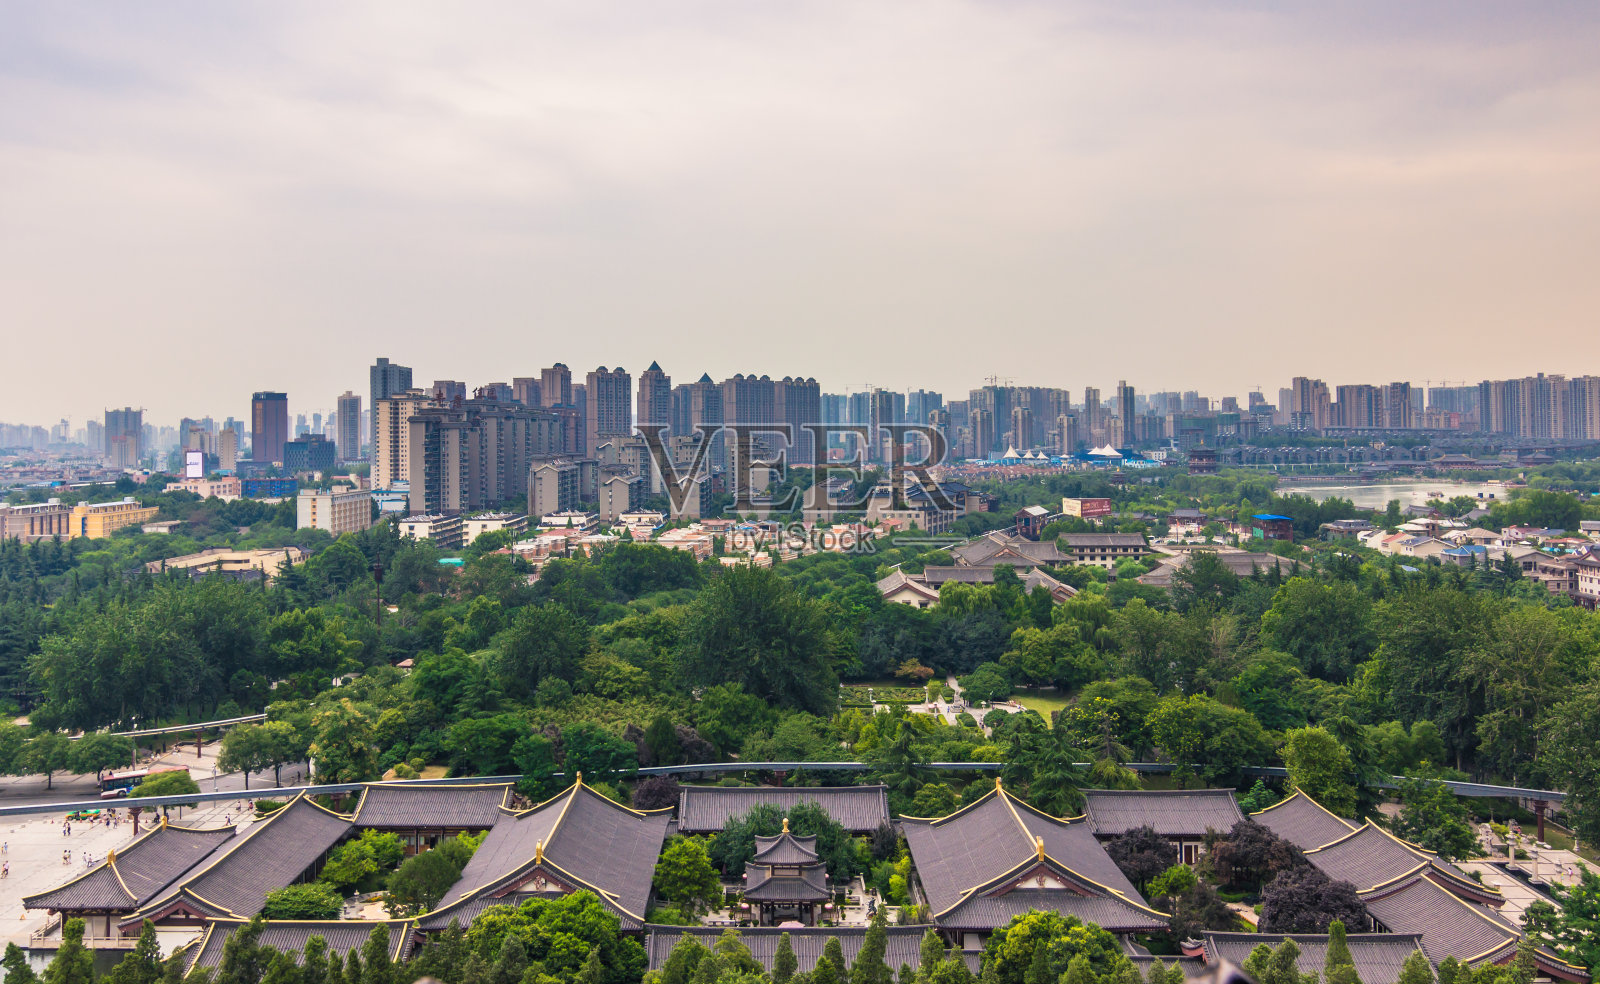 中国西安——2014年7月23日:从大雁塔俯瞰西安全景照片摄影图片